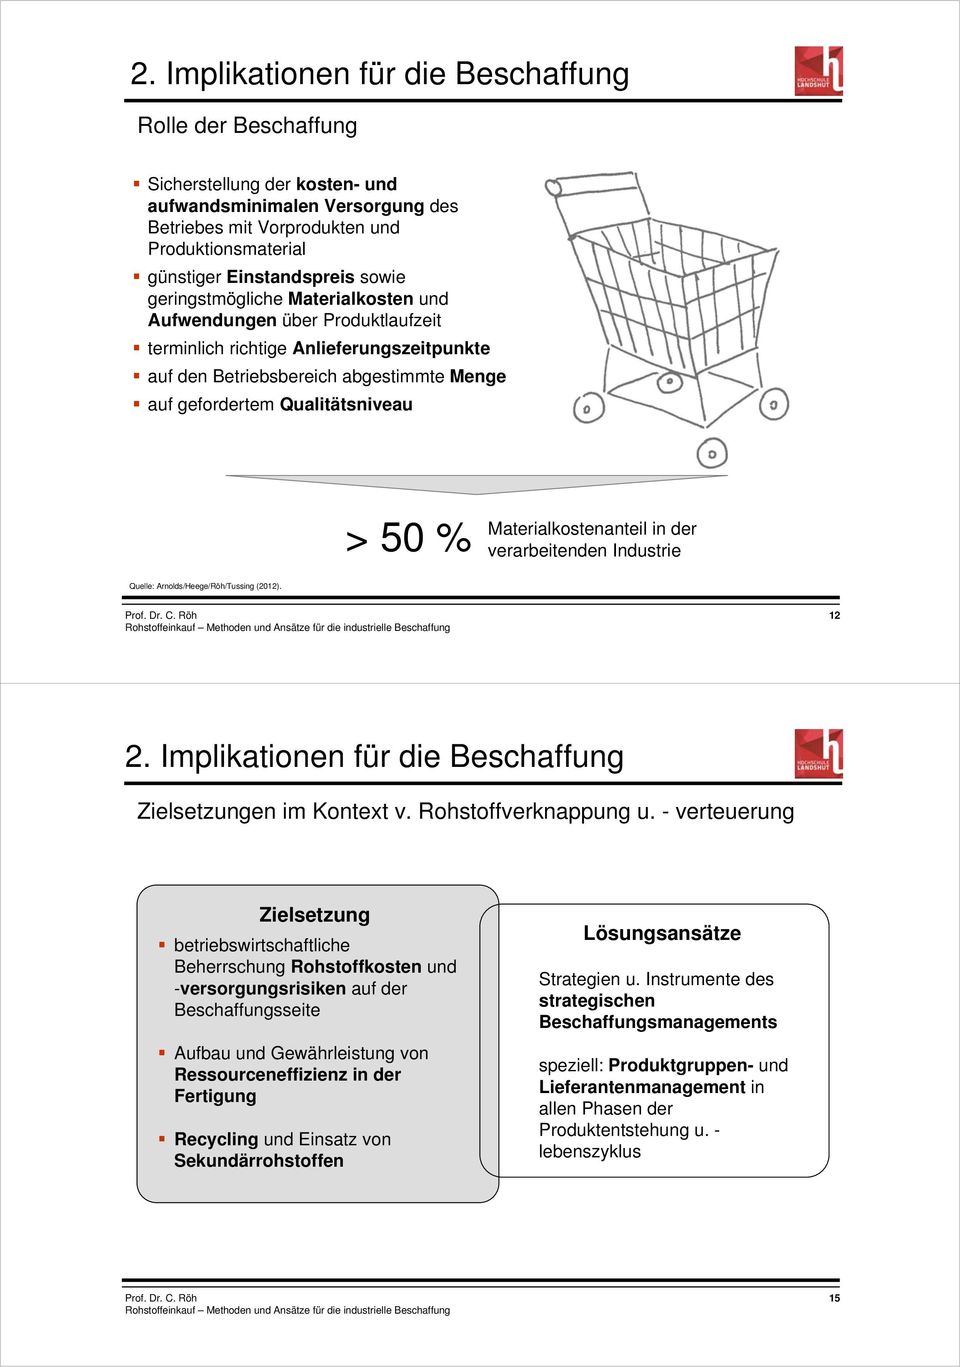 Materialkostenanteil in der > 50 % verarbeitenden Industrie Quelle: Arnolds/Heege/Röh/Tussing (2012). 12 2. Implikationen für die Beschaffung Zielsetzungen im Kontext v. Rohstoffverknappung u.